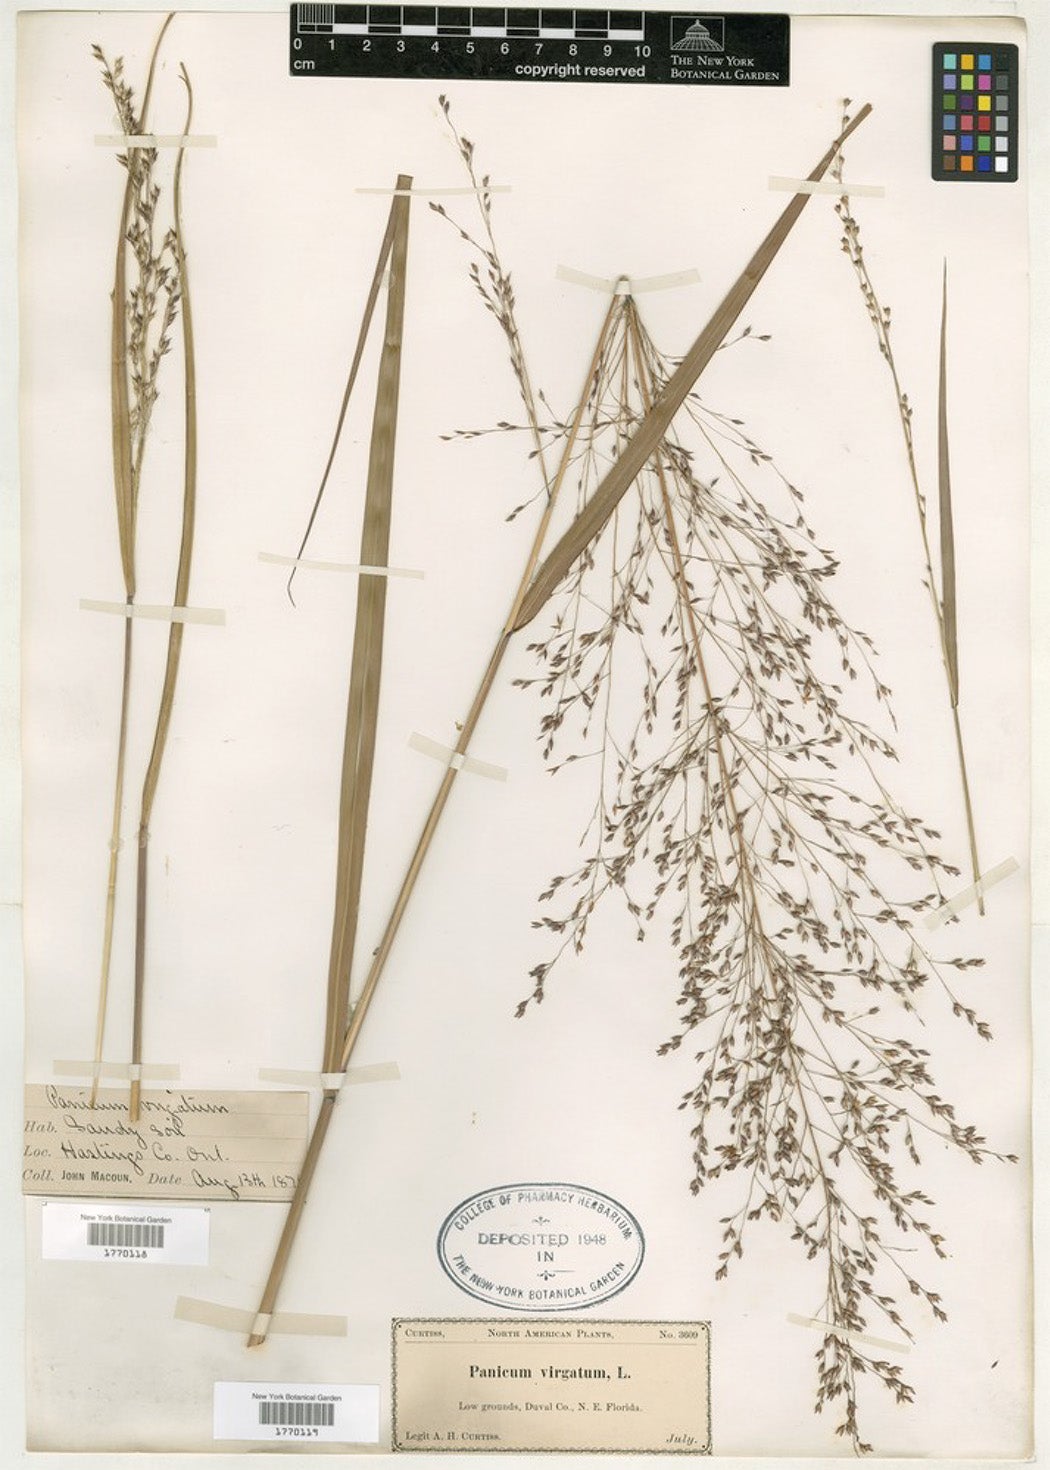 Switchgrass herbarium specimen from the New York Botanical Garden. 